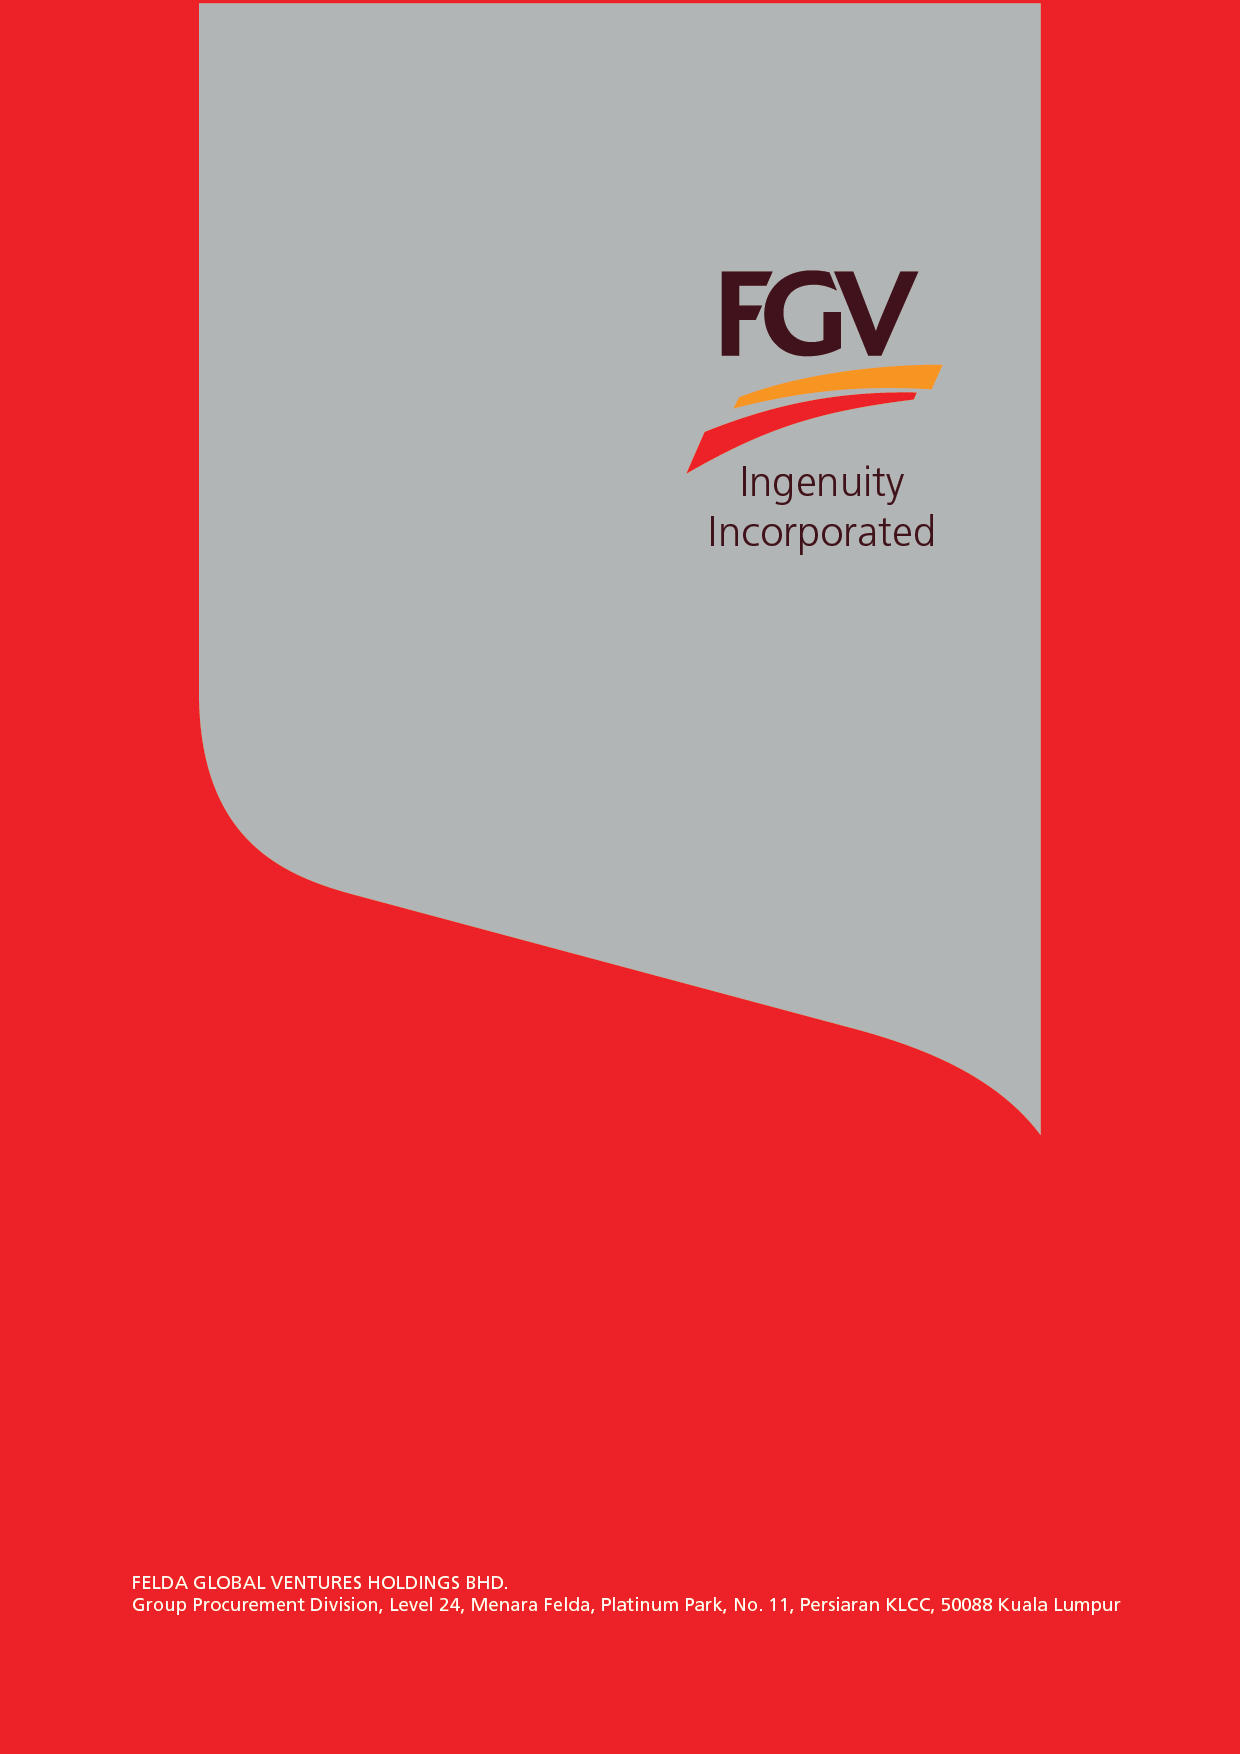 FGV edaftar Carian Website / Pendaftaran Baru / Muat Naik Lampiran / Pembaharuan Pendaftaran / Penambahan &